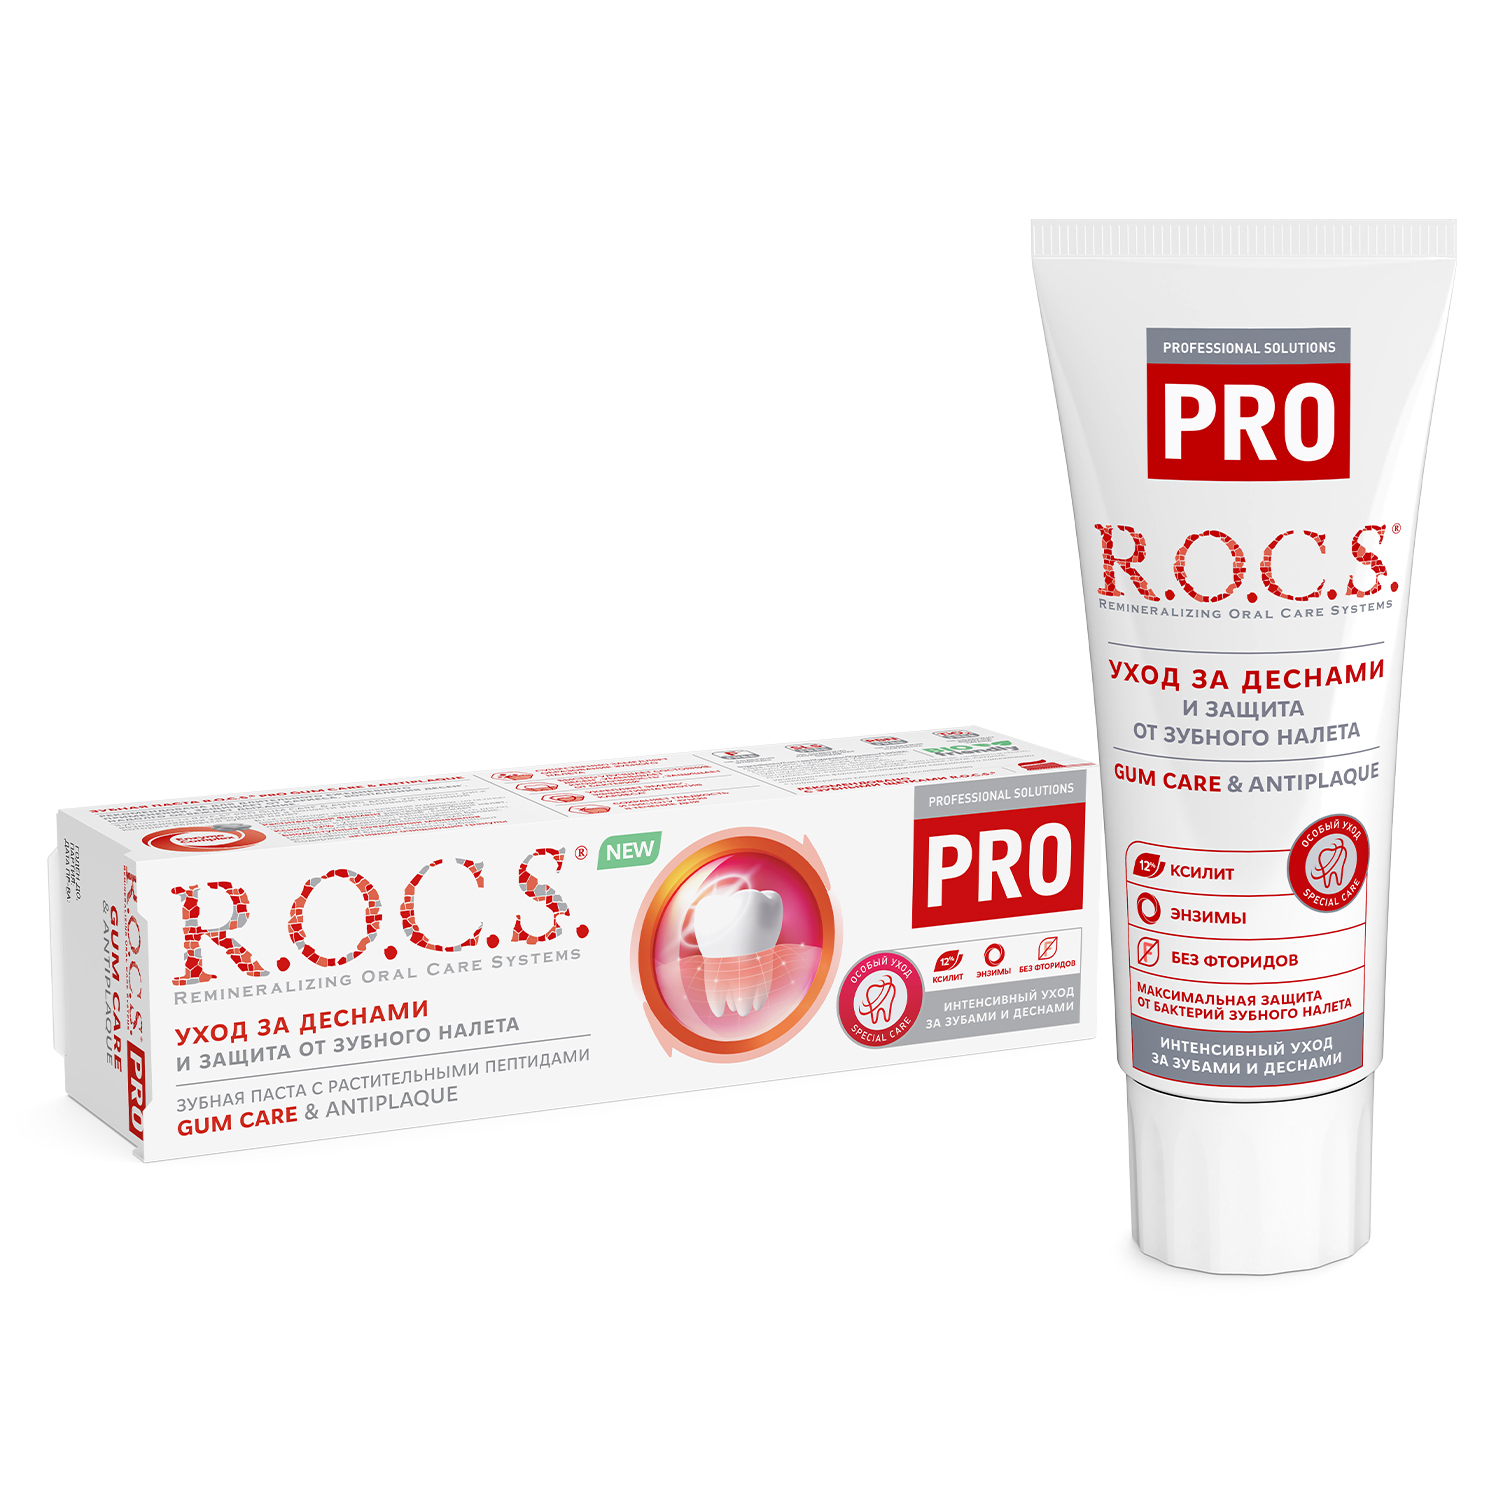 Зубная паста R.O.C.S. Pro Gum Care & Antiplaque 60 мл бизорюк органическая зубная паста против воспалений десен с маклюрой 50